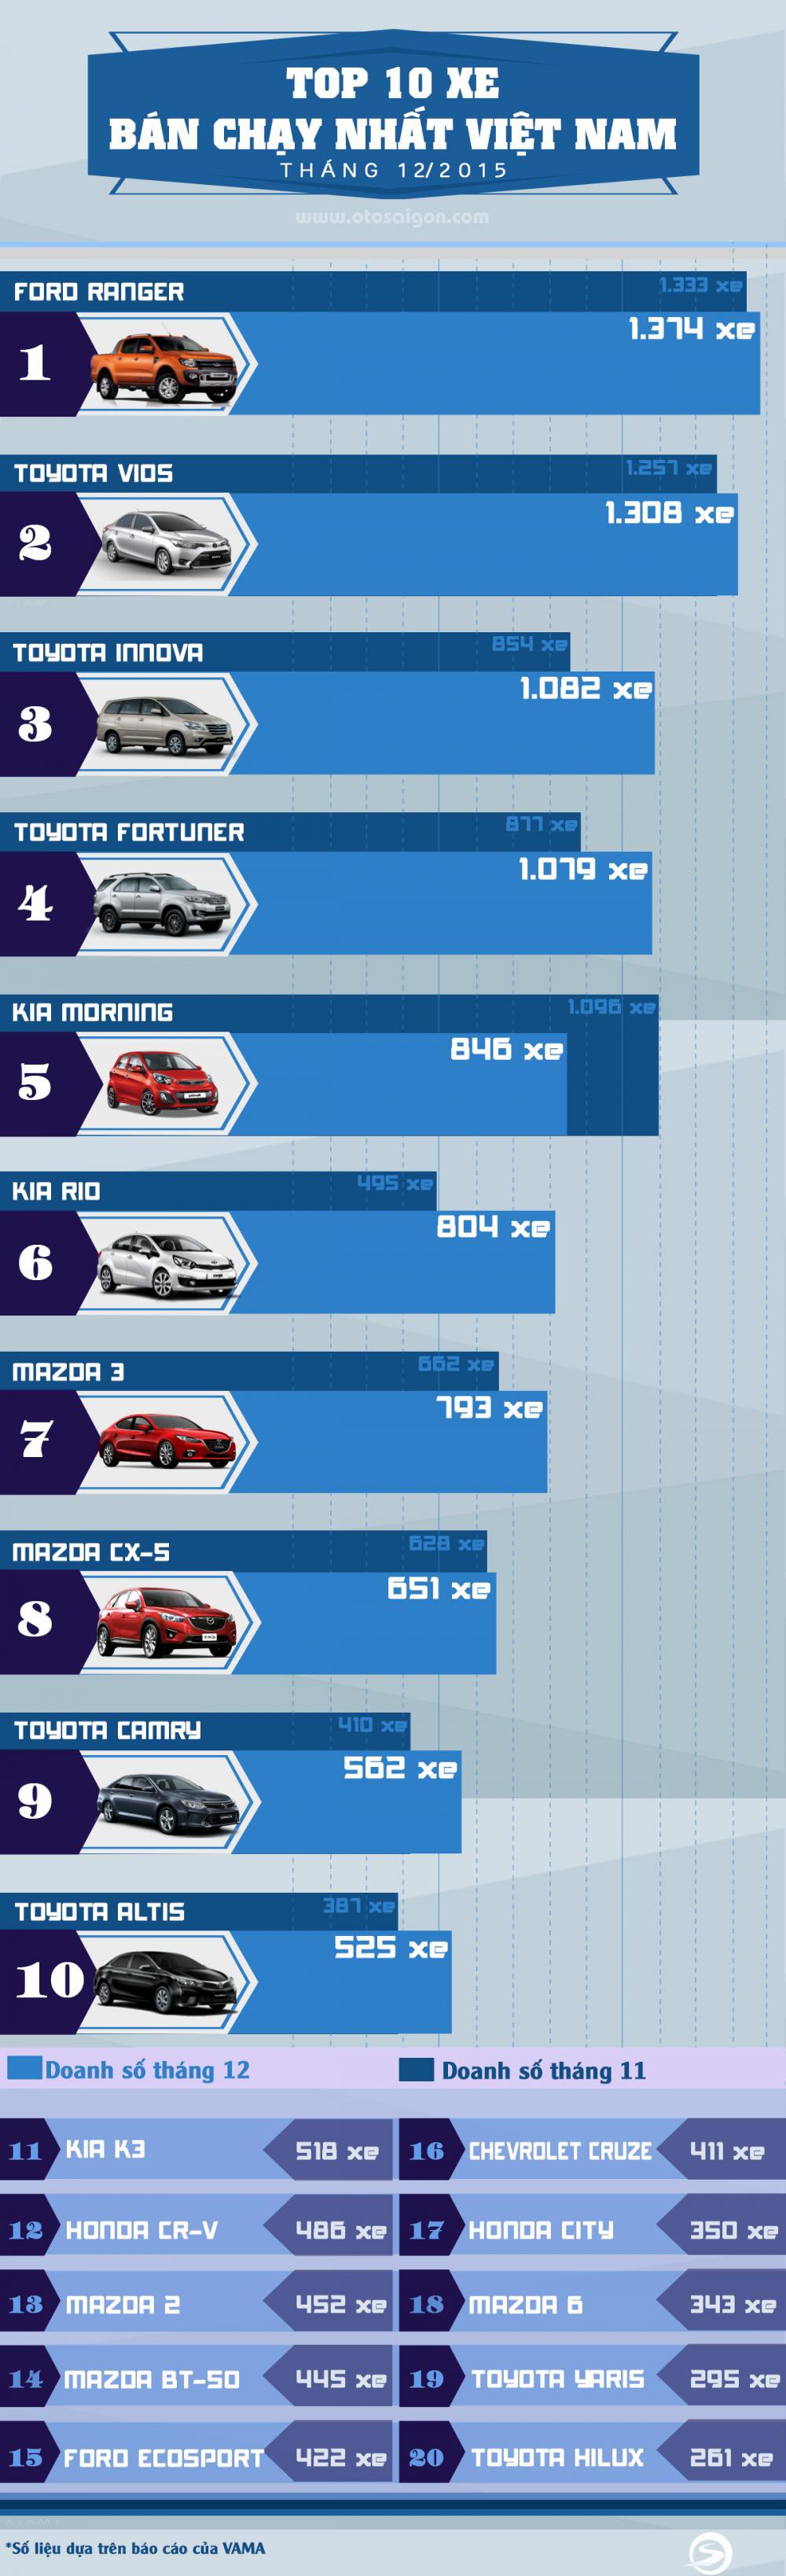 10 mẫu ô tô bán chạy nhất tháng 12/2015 tại Việt Nam 1